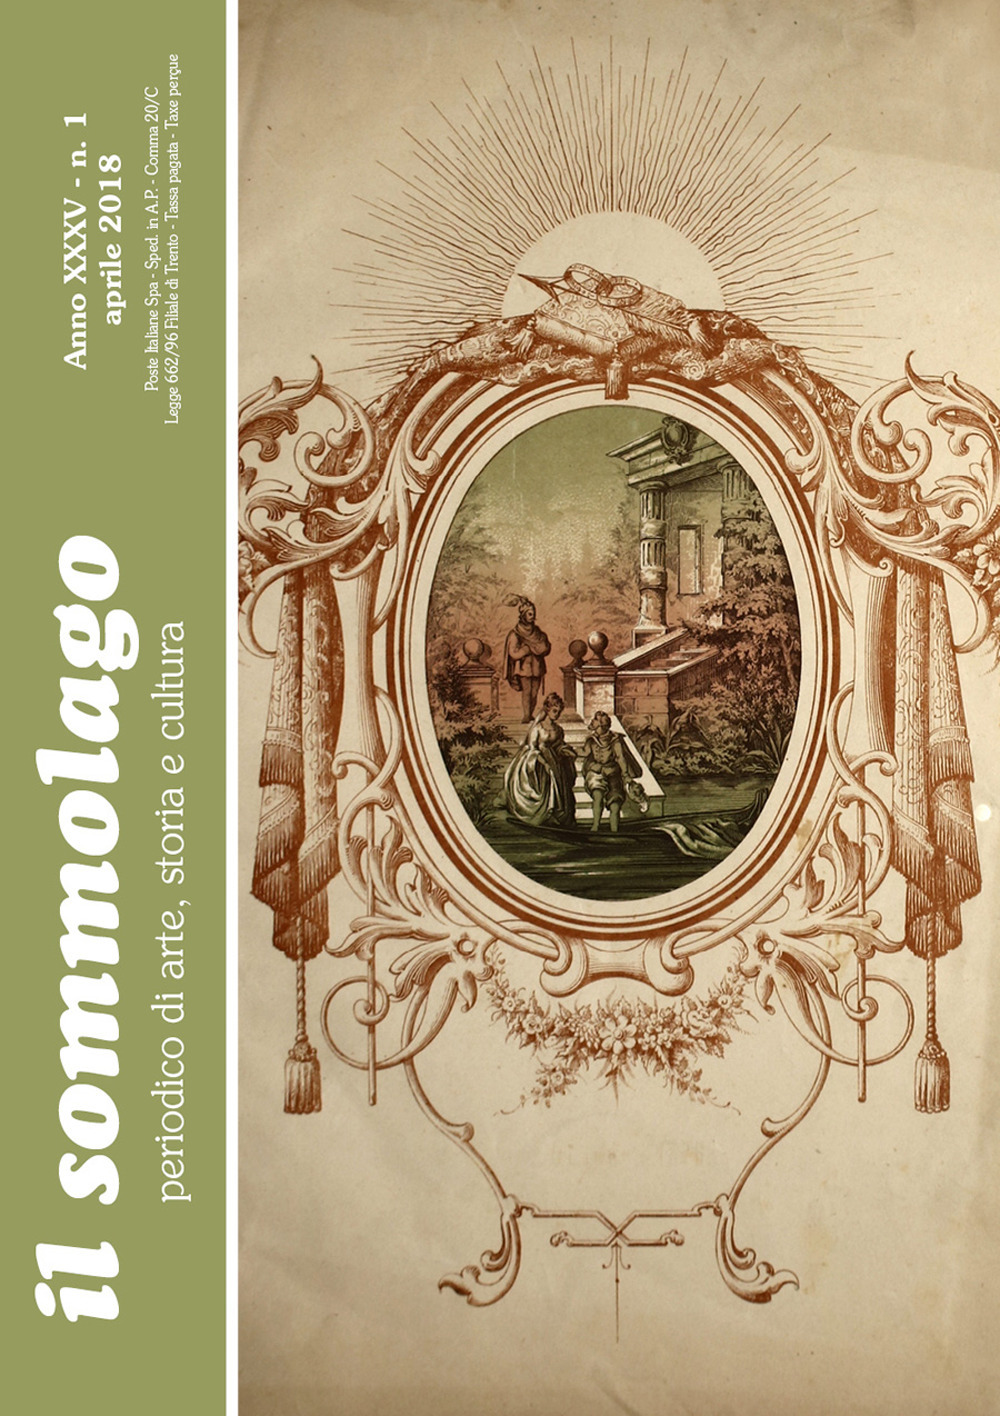 Il sommolago. Periodico di storia, arte e cultura (2018). Vol. 1: Aprile